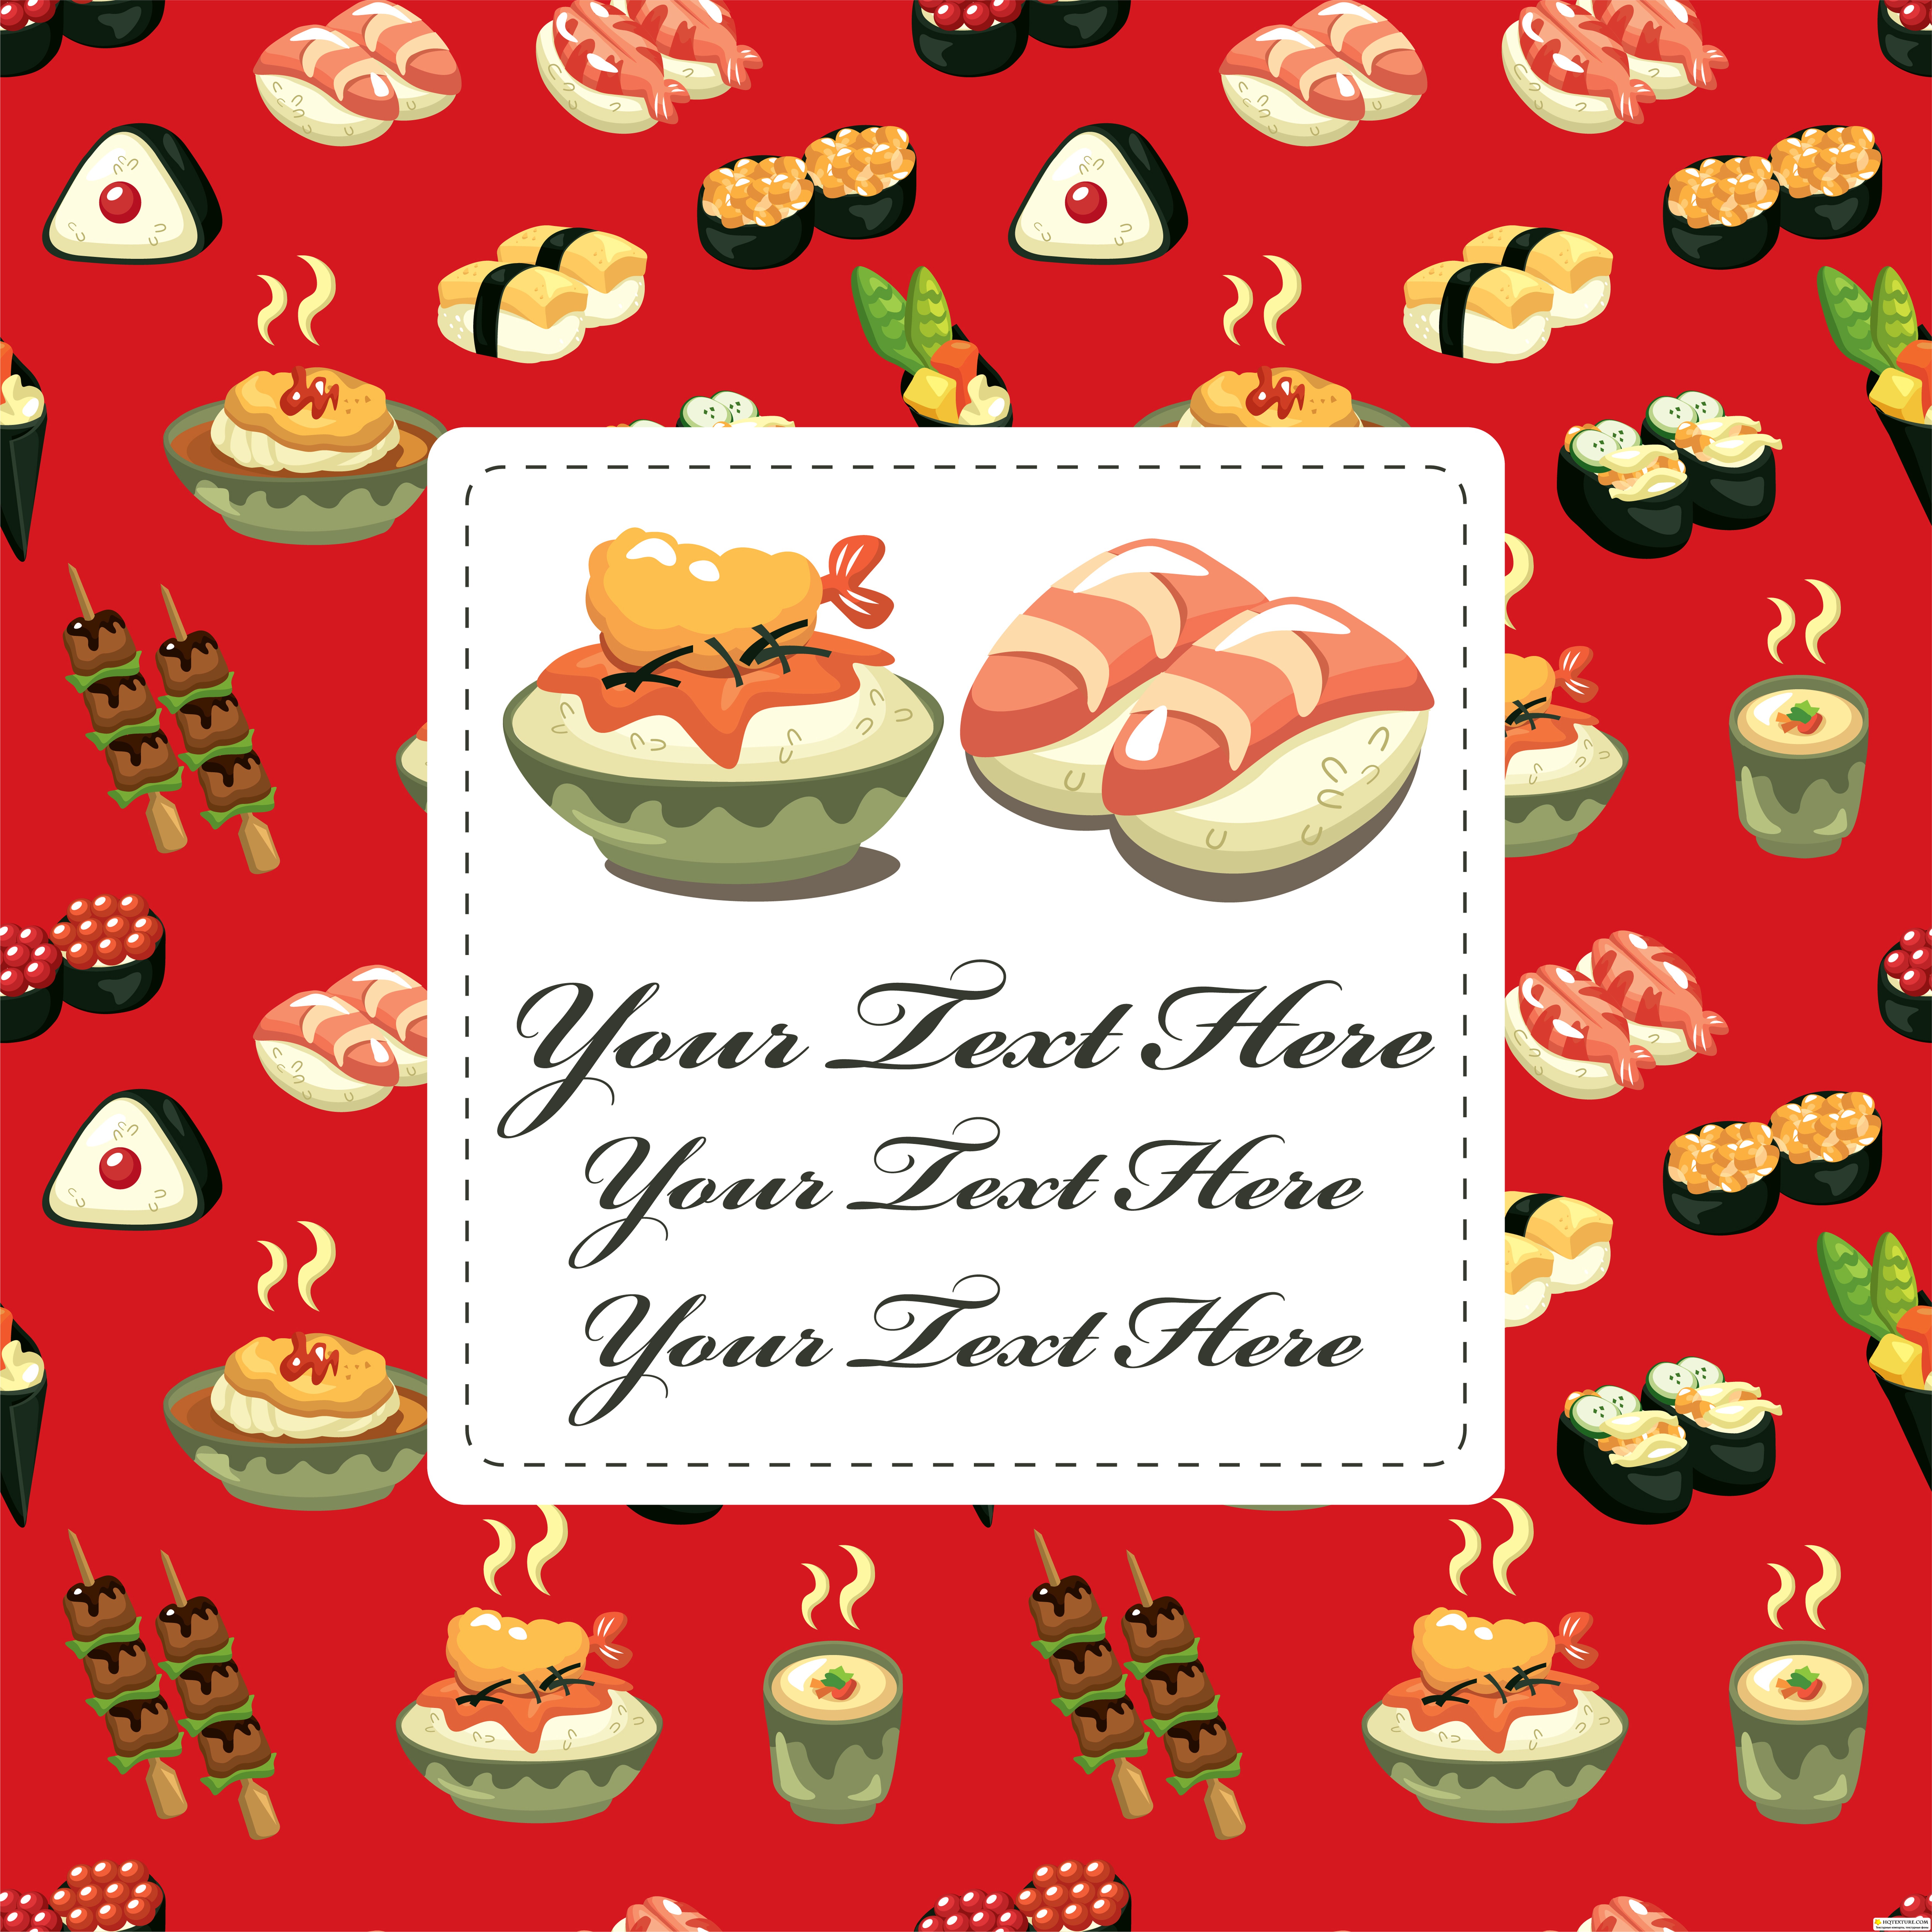 Stock: Japanese food menu card » Векторные клипарты, текстурные фоны ...